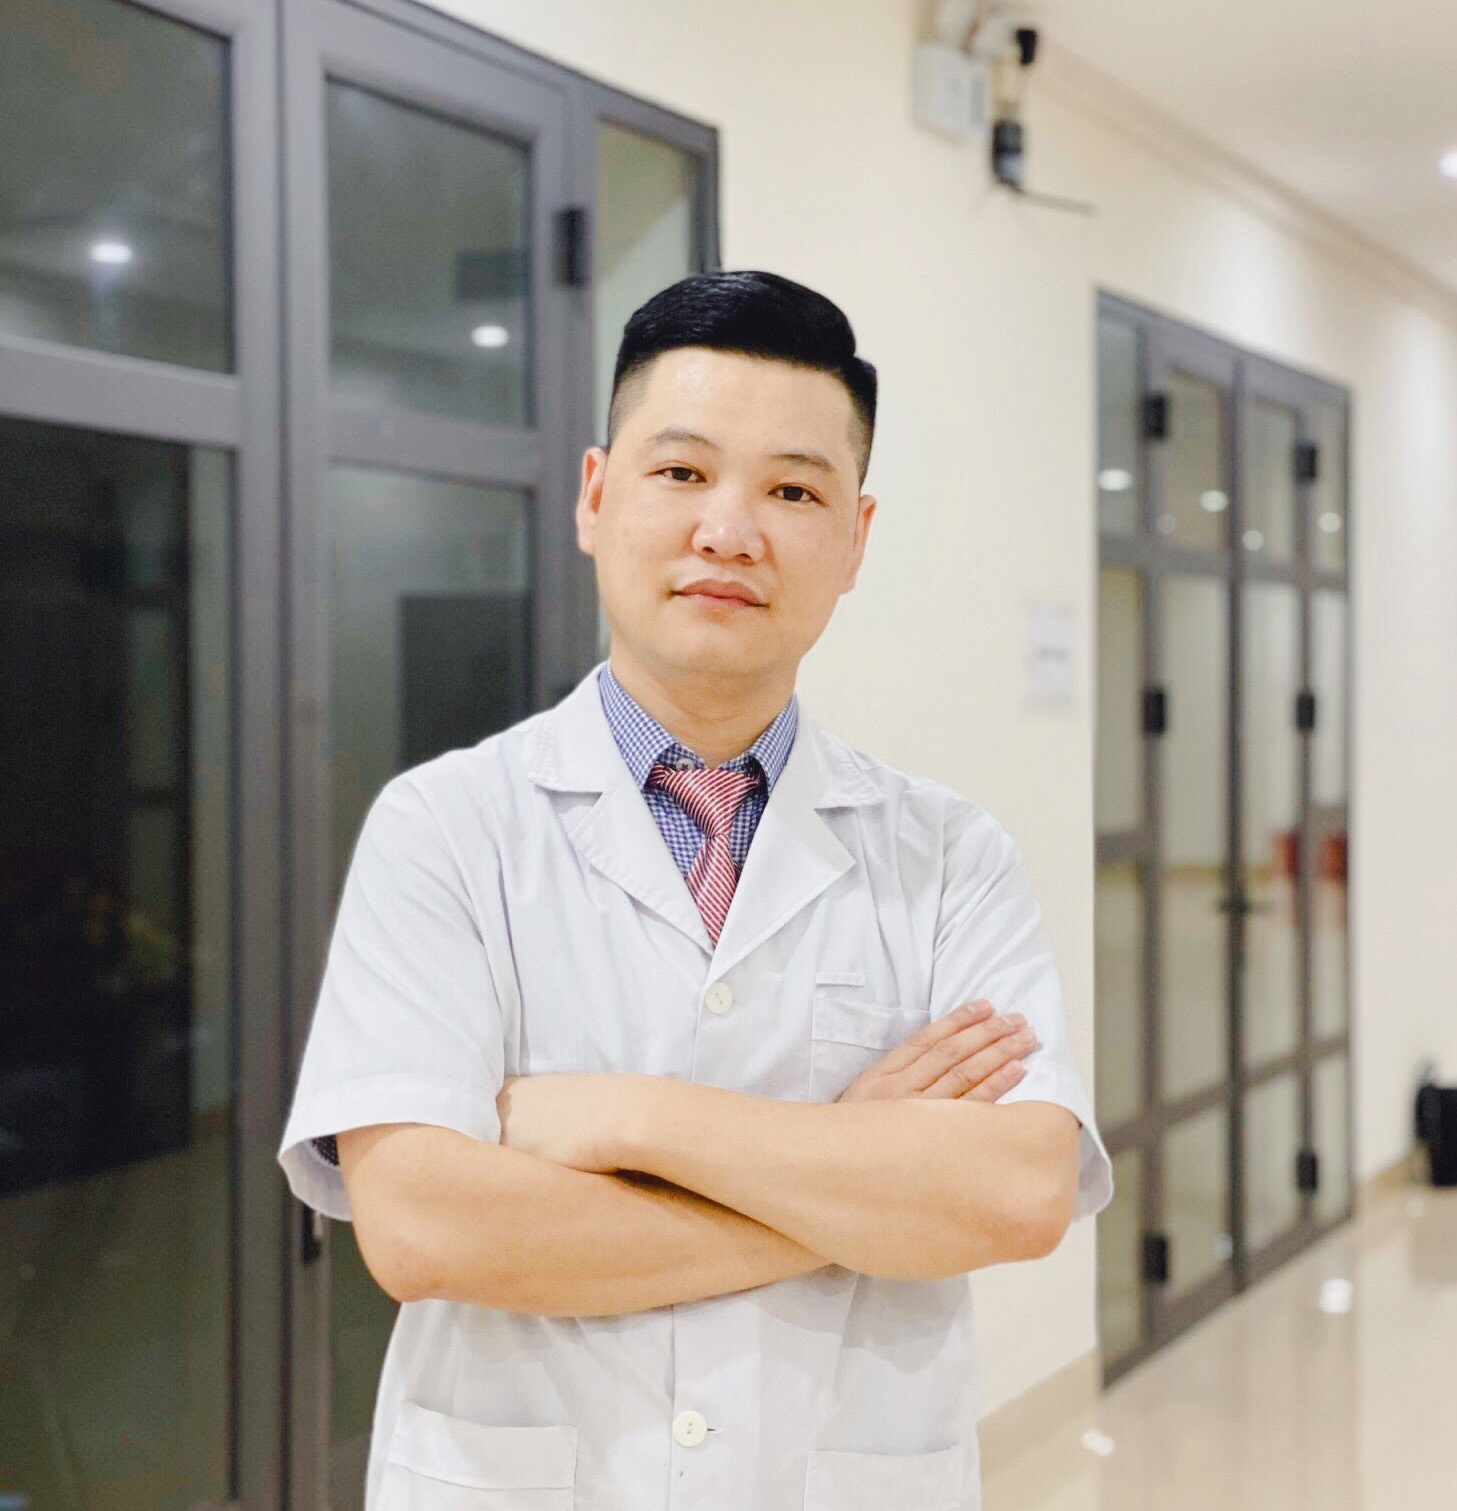 Bác sĩ Chuyên gia Cắt Bao Quy Đầu tại Lào Cai, Tự tin tận tâm với 15 năm kinh nghiệm